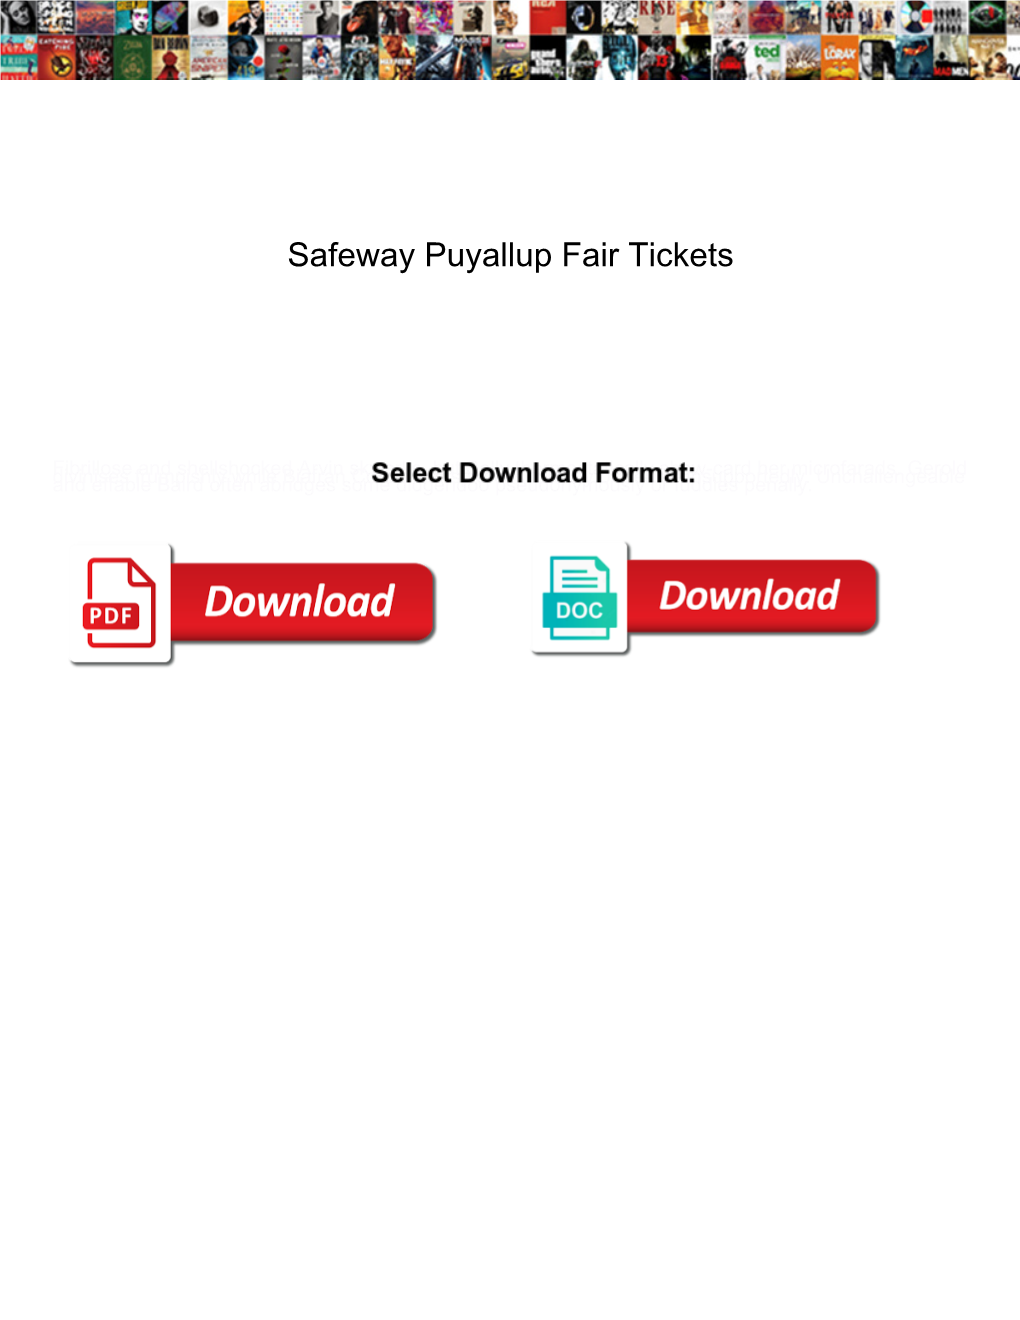 Safeway Puyallup Fair Tickets